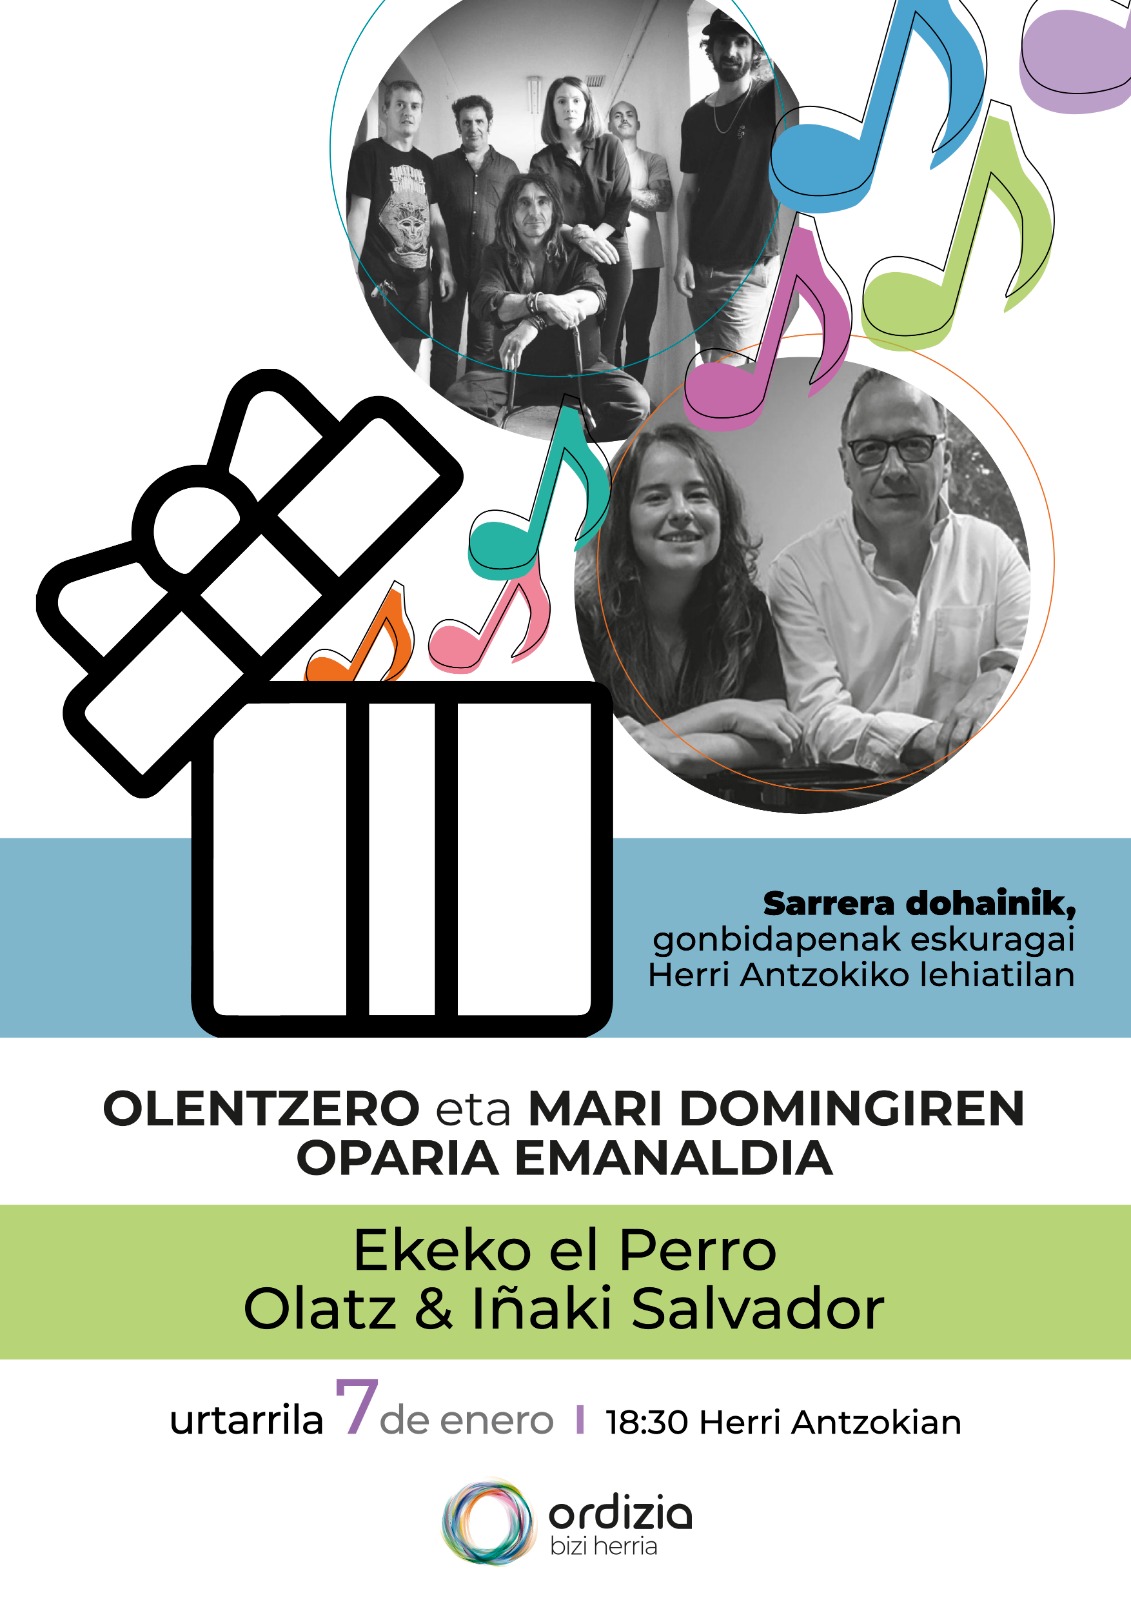 Olatz & Iñaki Salvador, eta Ekeko el Perro-ren kontzertuak